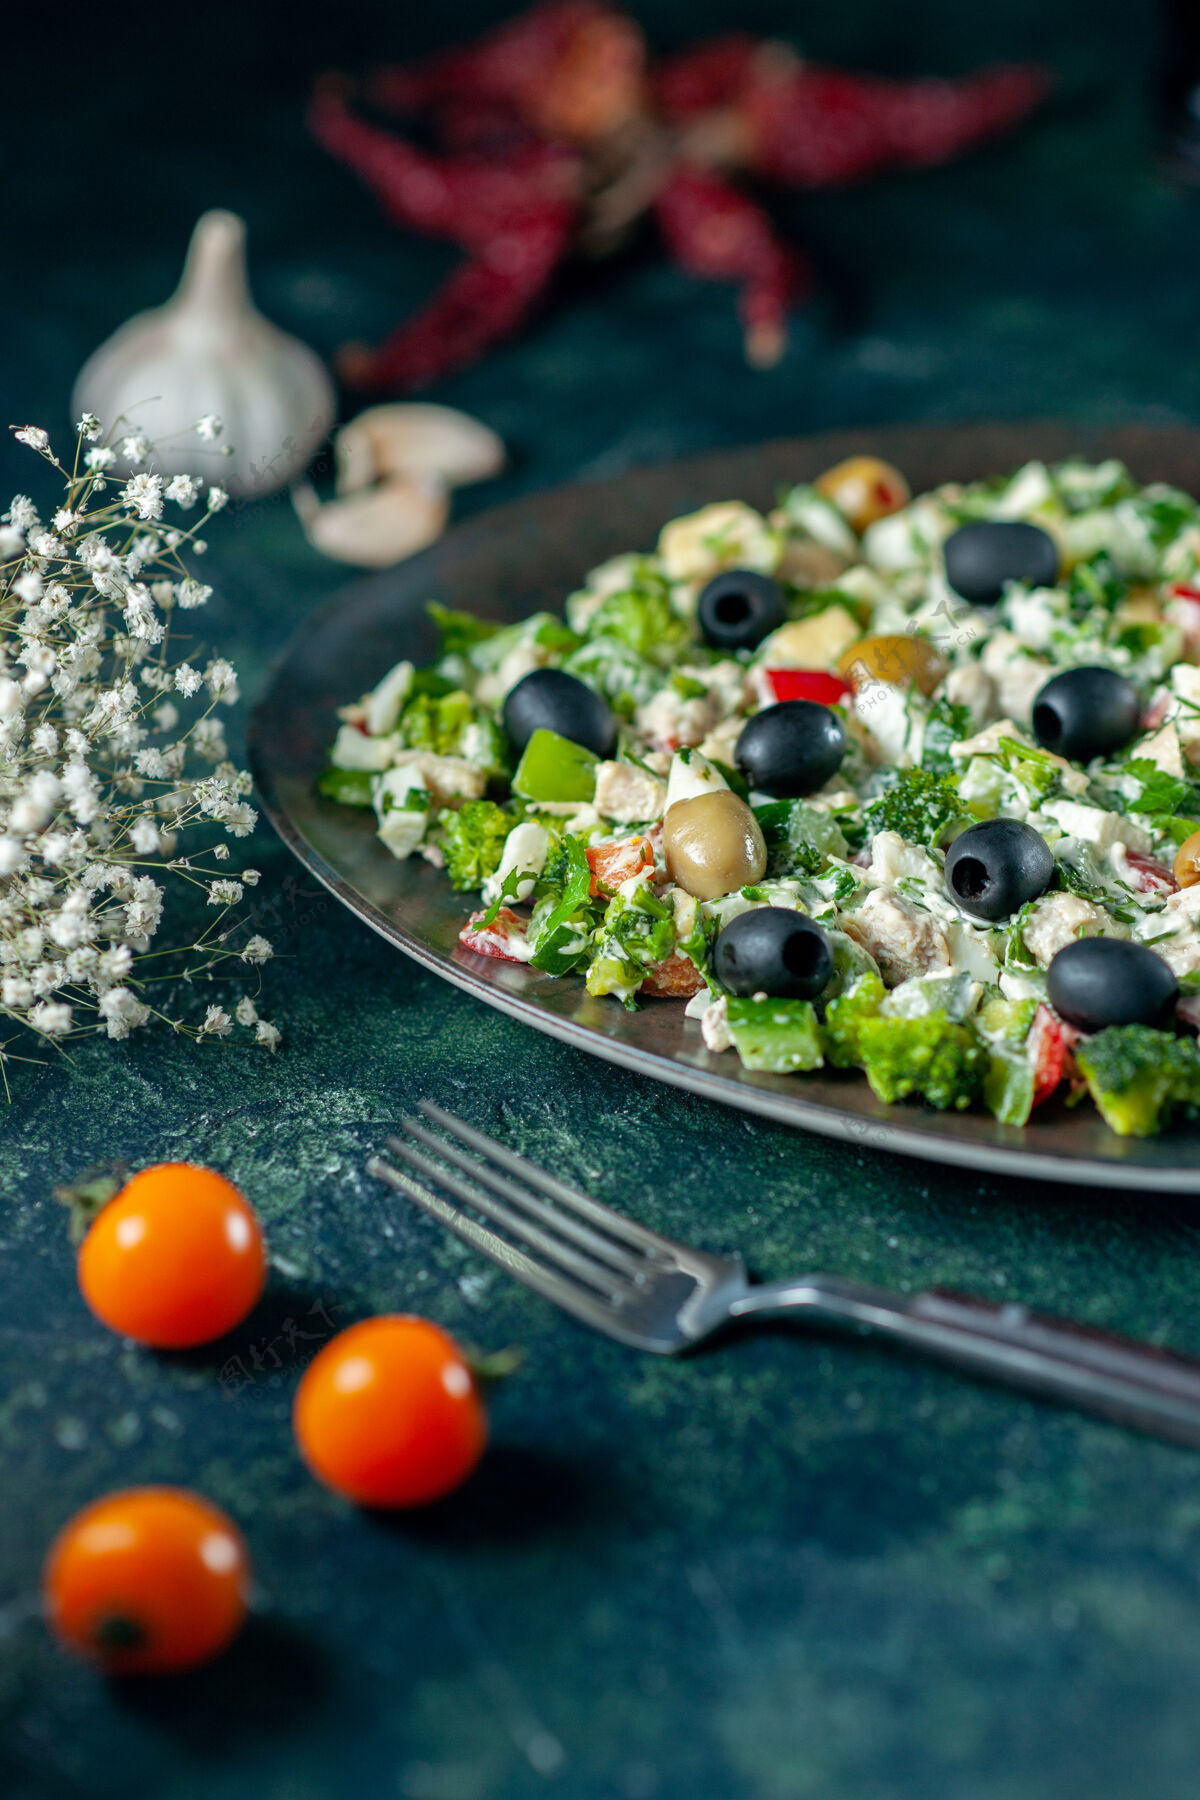 蔬菜前视图蔬菜沙拉 深蓝色表面上有玛雅奈斯和橄榄 假日菜肴照片晚餐颜色食物风景晚餐